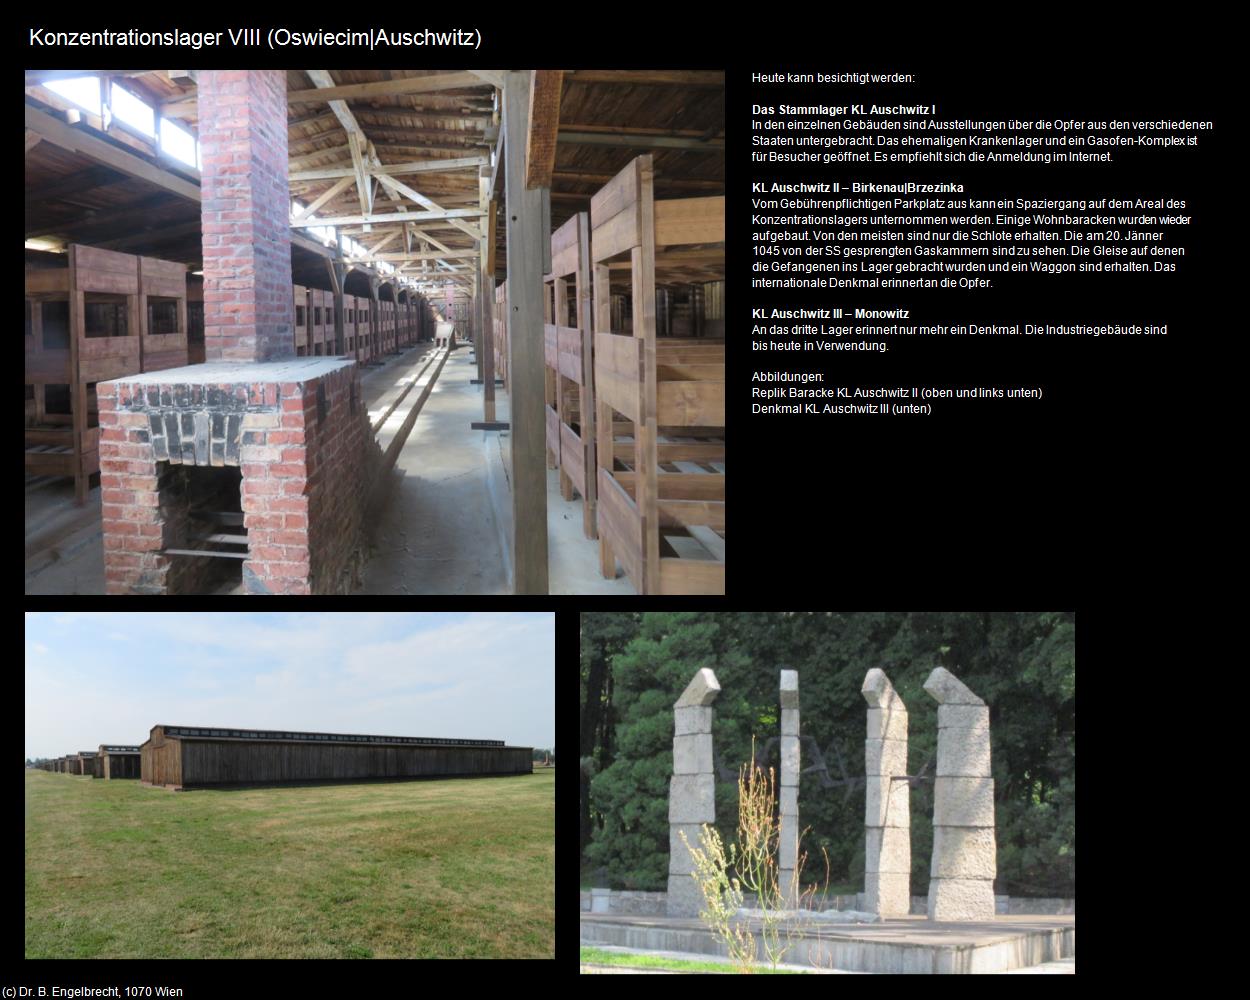 Konzentrationslager VIII (Oswiecim|Auschwitz) in POLEN-Galizien